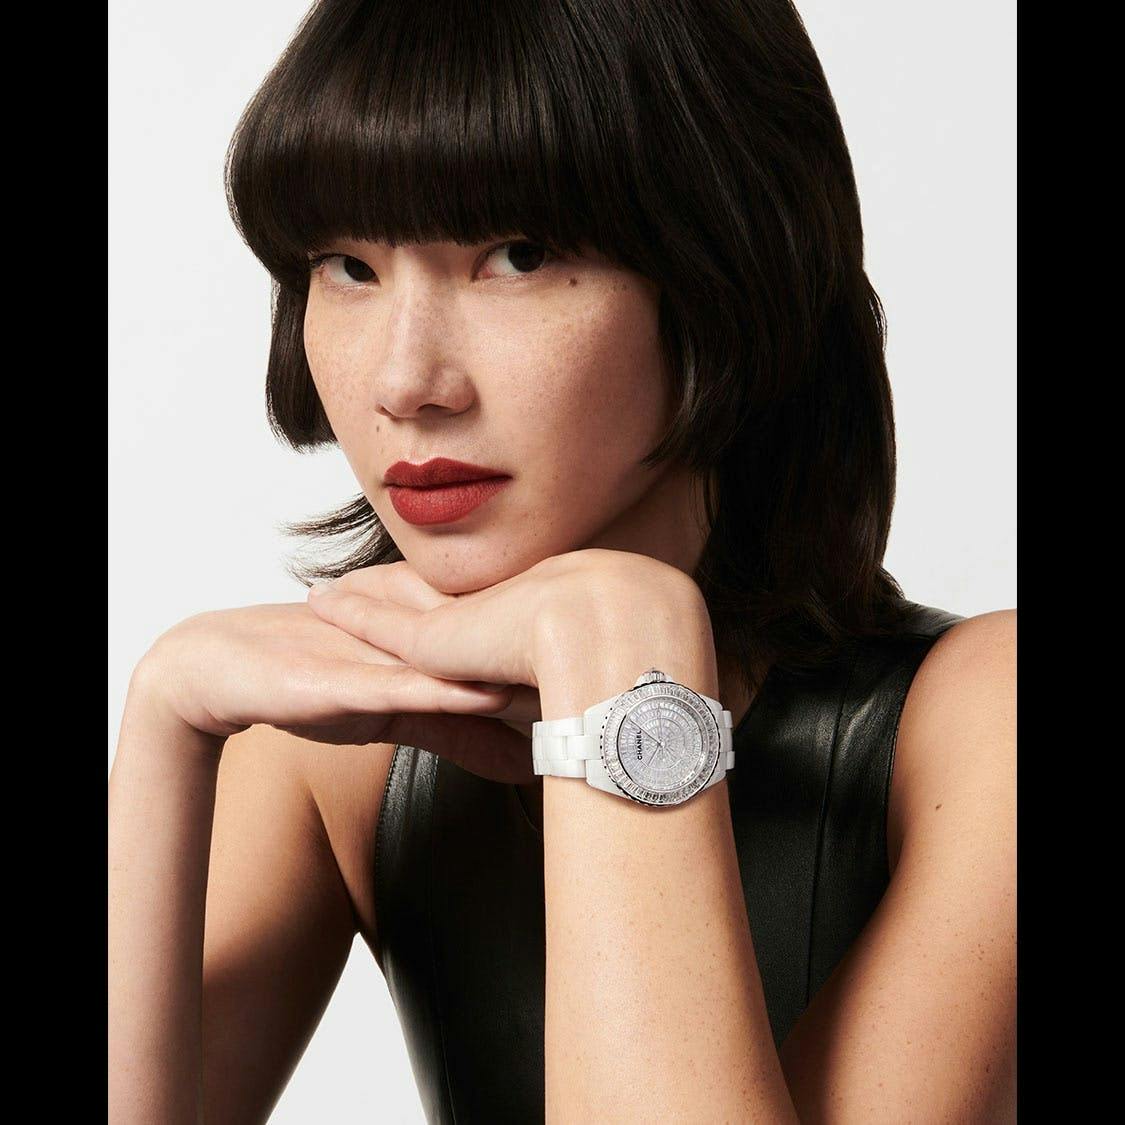 person wrist adult female woman face portrait arm finger wristwatch